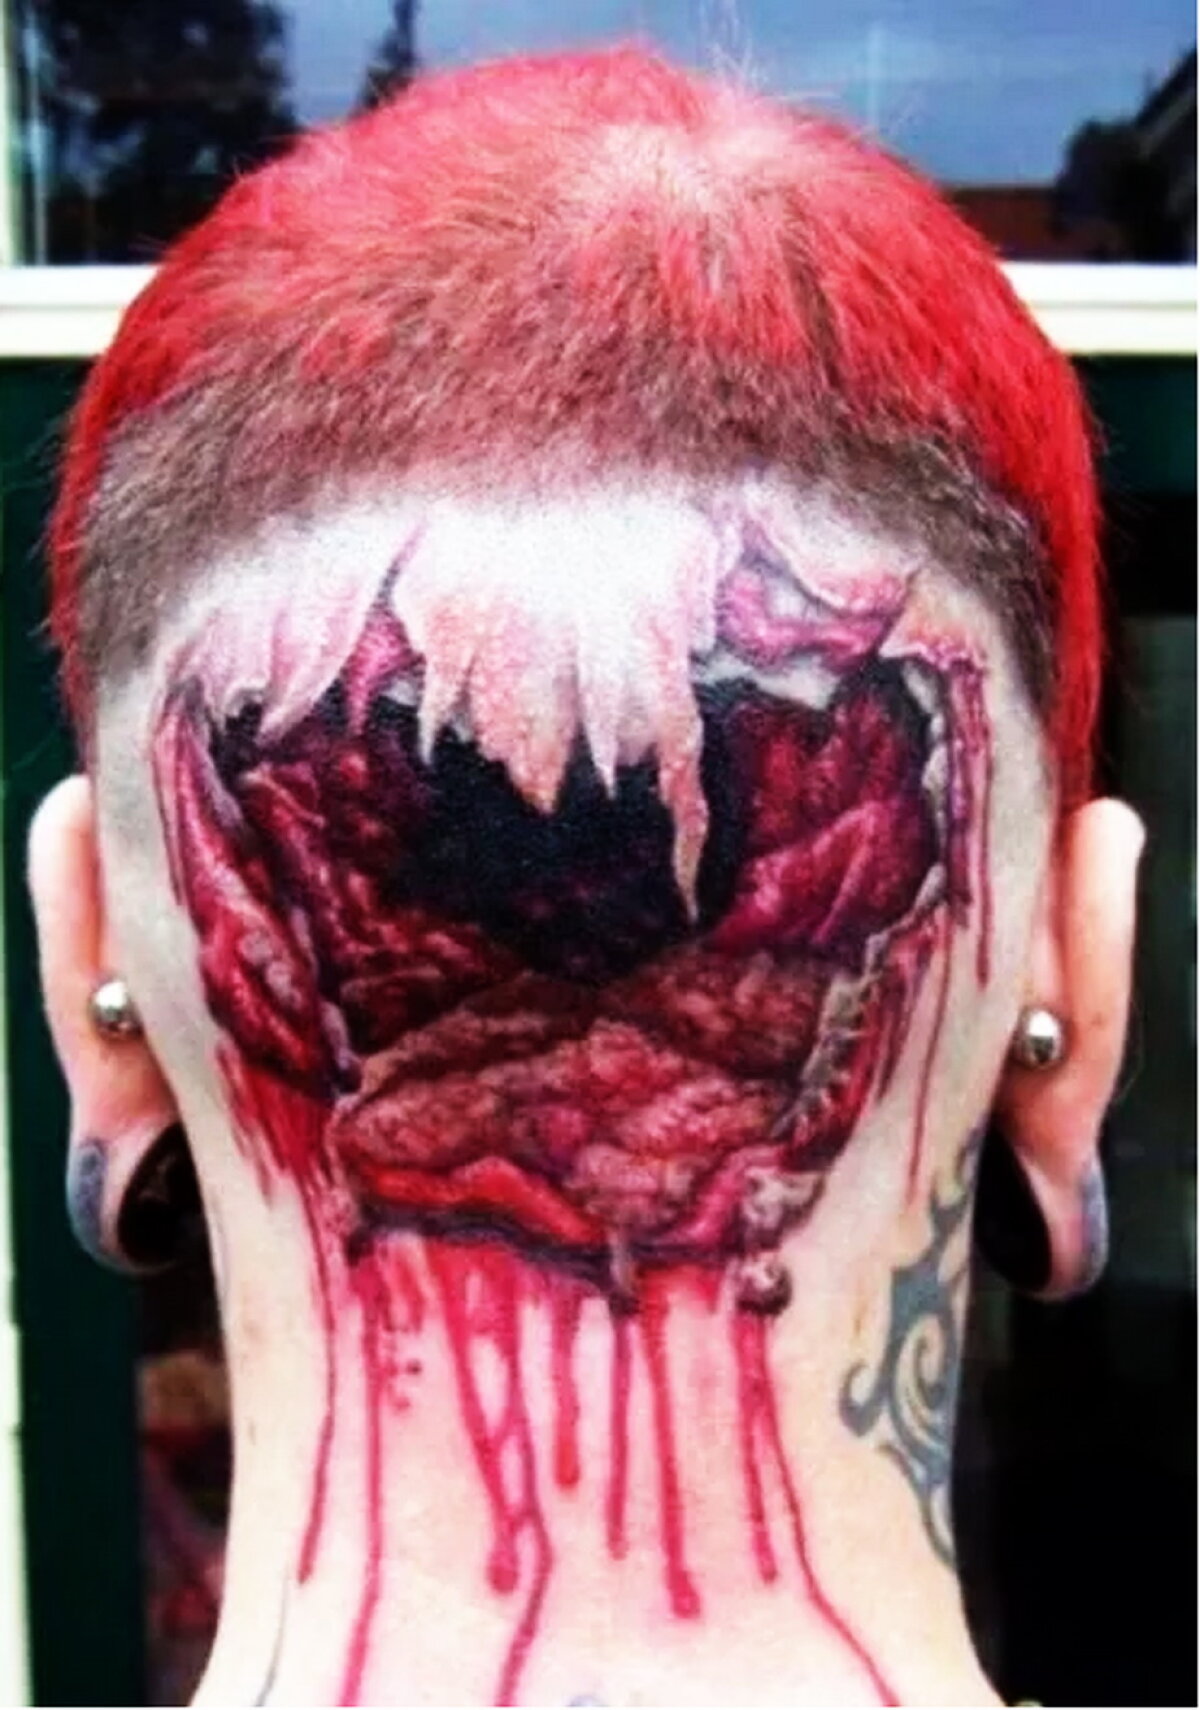 FOTO » Tu ţi-ai face aşa ceva? Topul celor mai nebune tatuaje din lume!